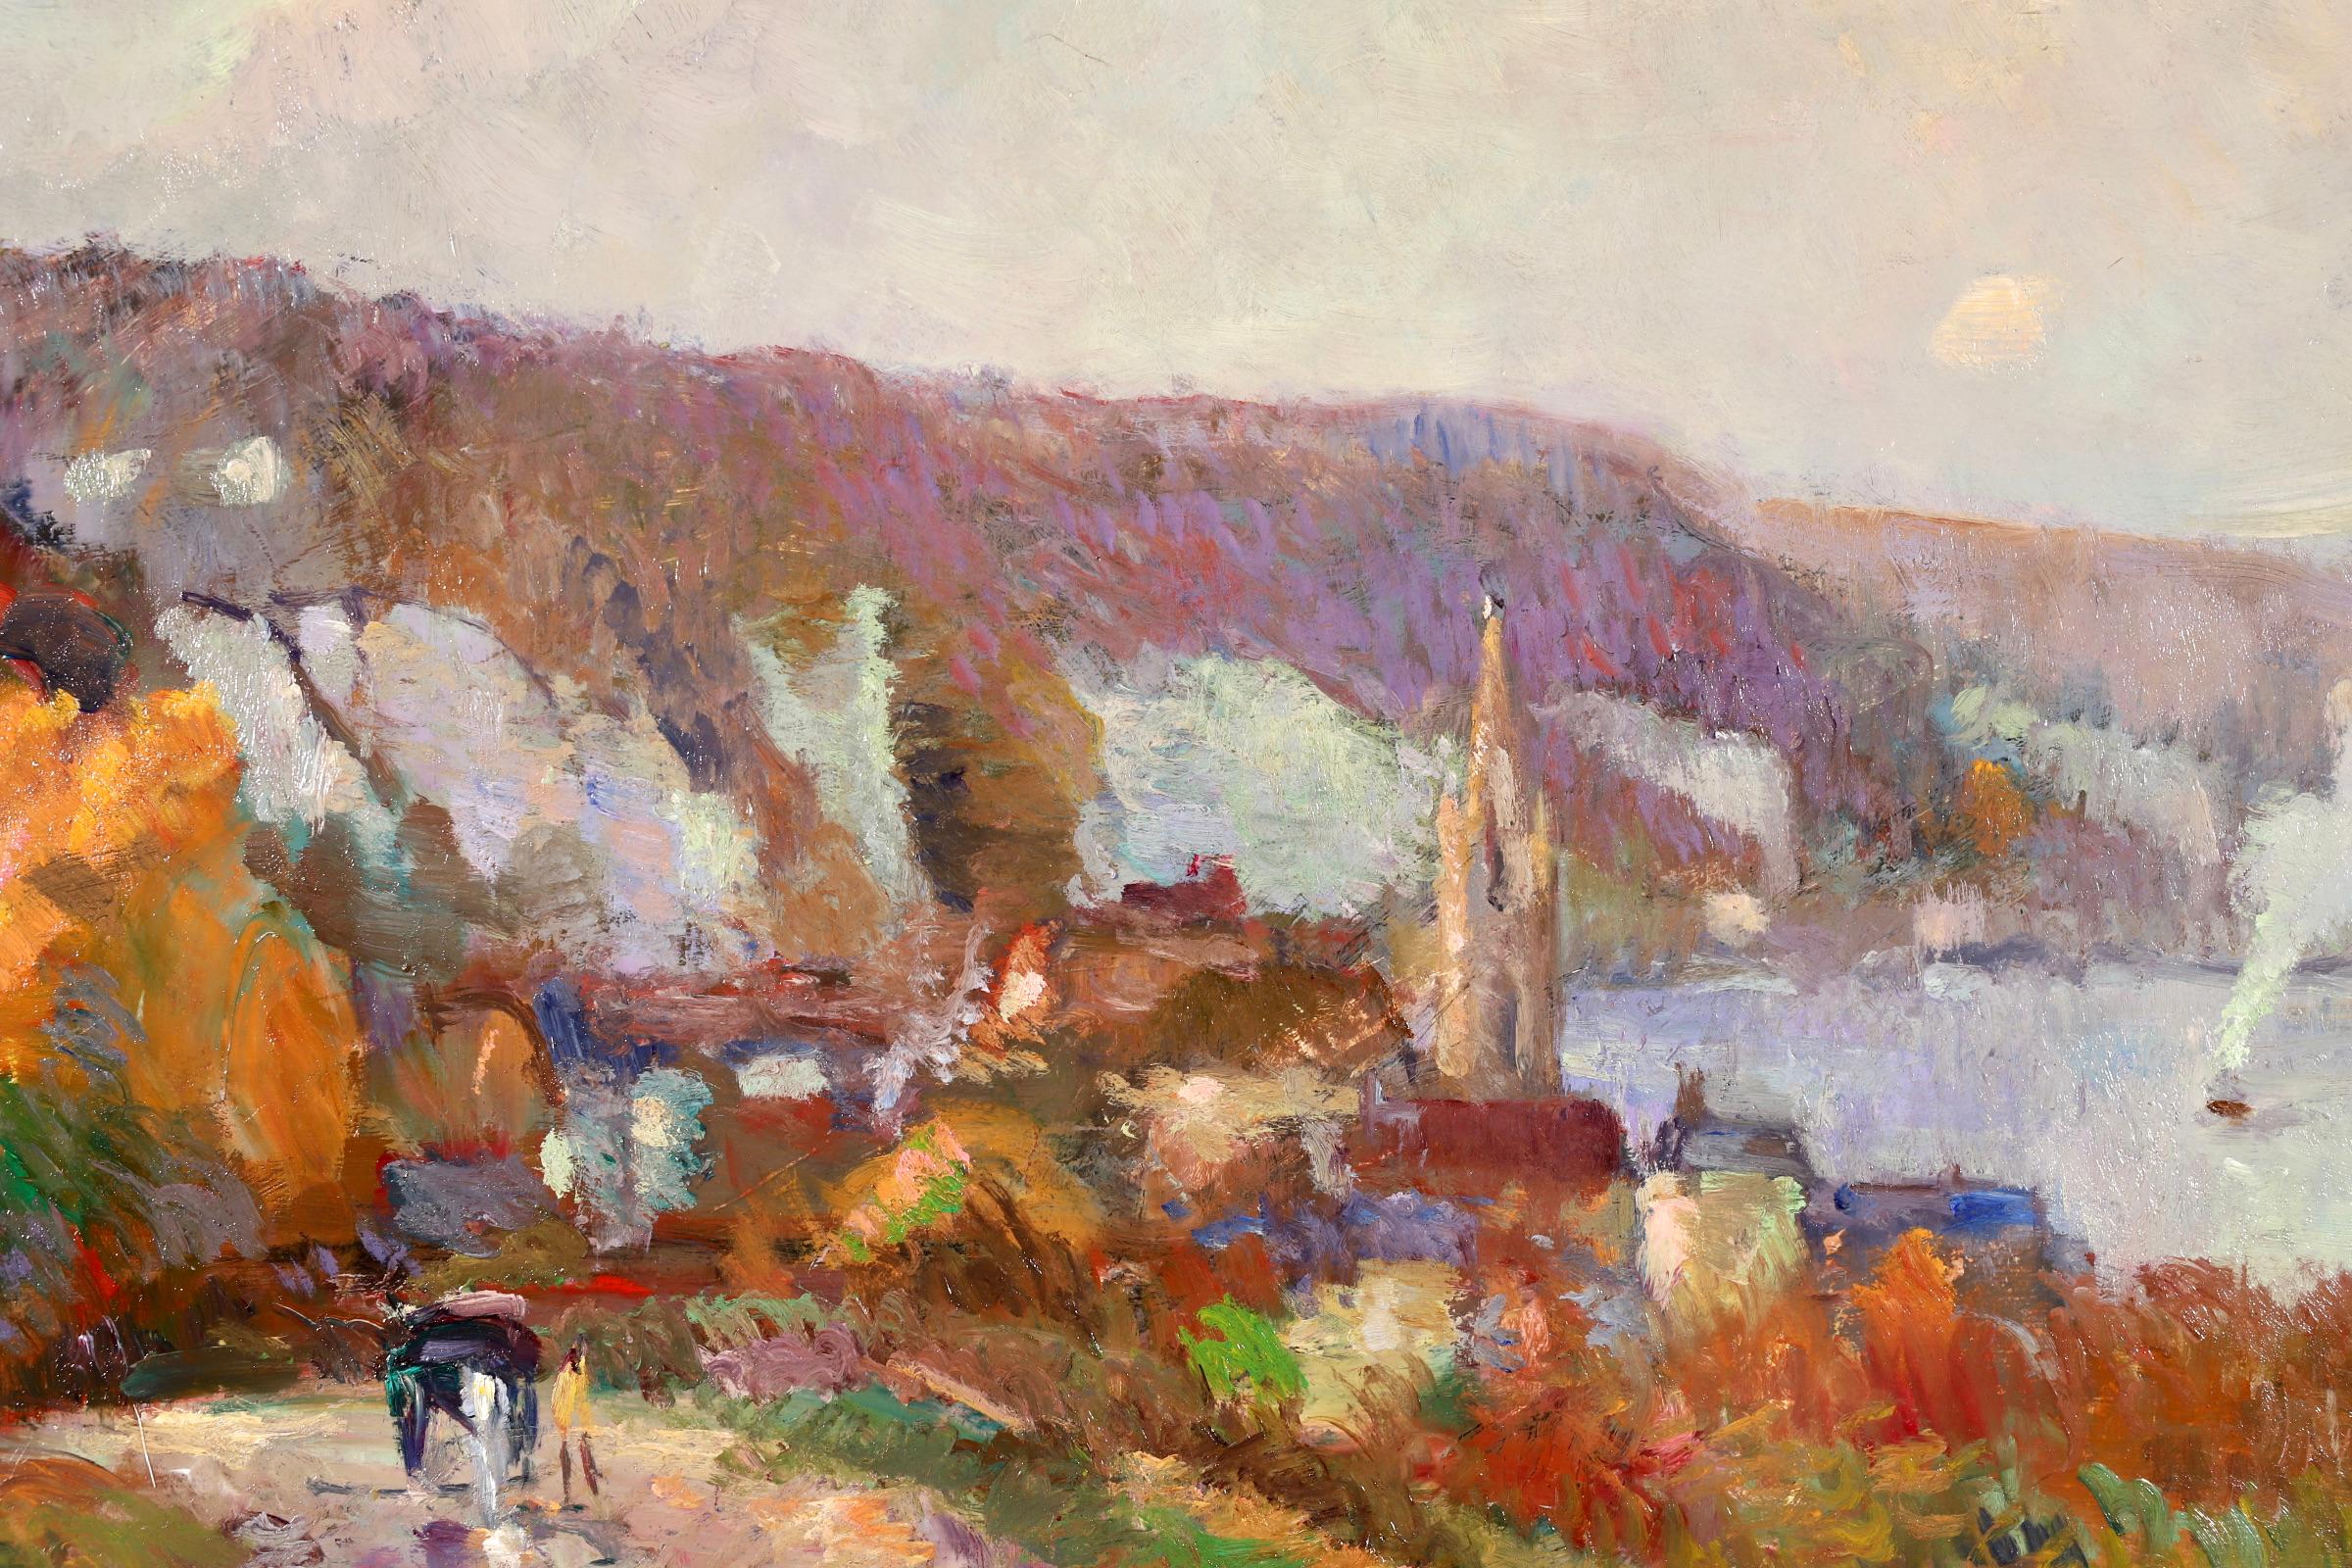 Huile sur toile signée Fauviste, paysage de rivière vers 1920 par le peintre post-impressionniste français Robert Antoine Pinchon. L'œuvre représente une vue de la Seine qui traverse Duclair, dans la région de Normandie, dans le nord de la France.